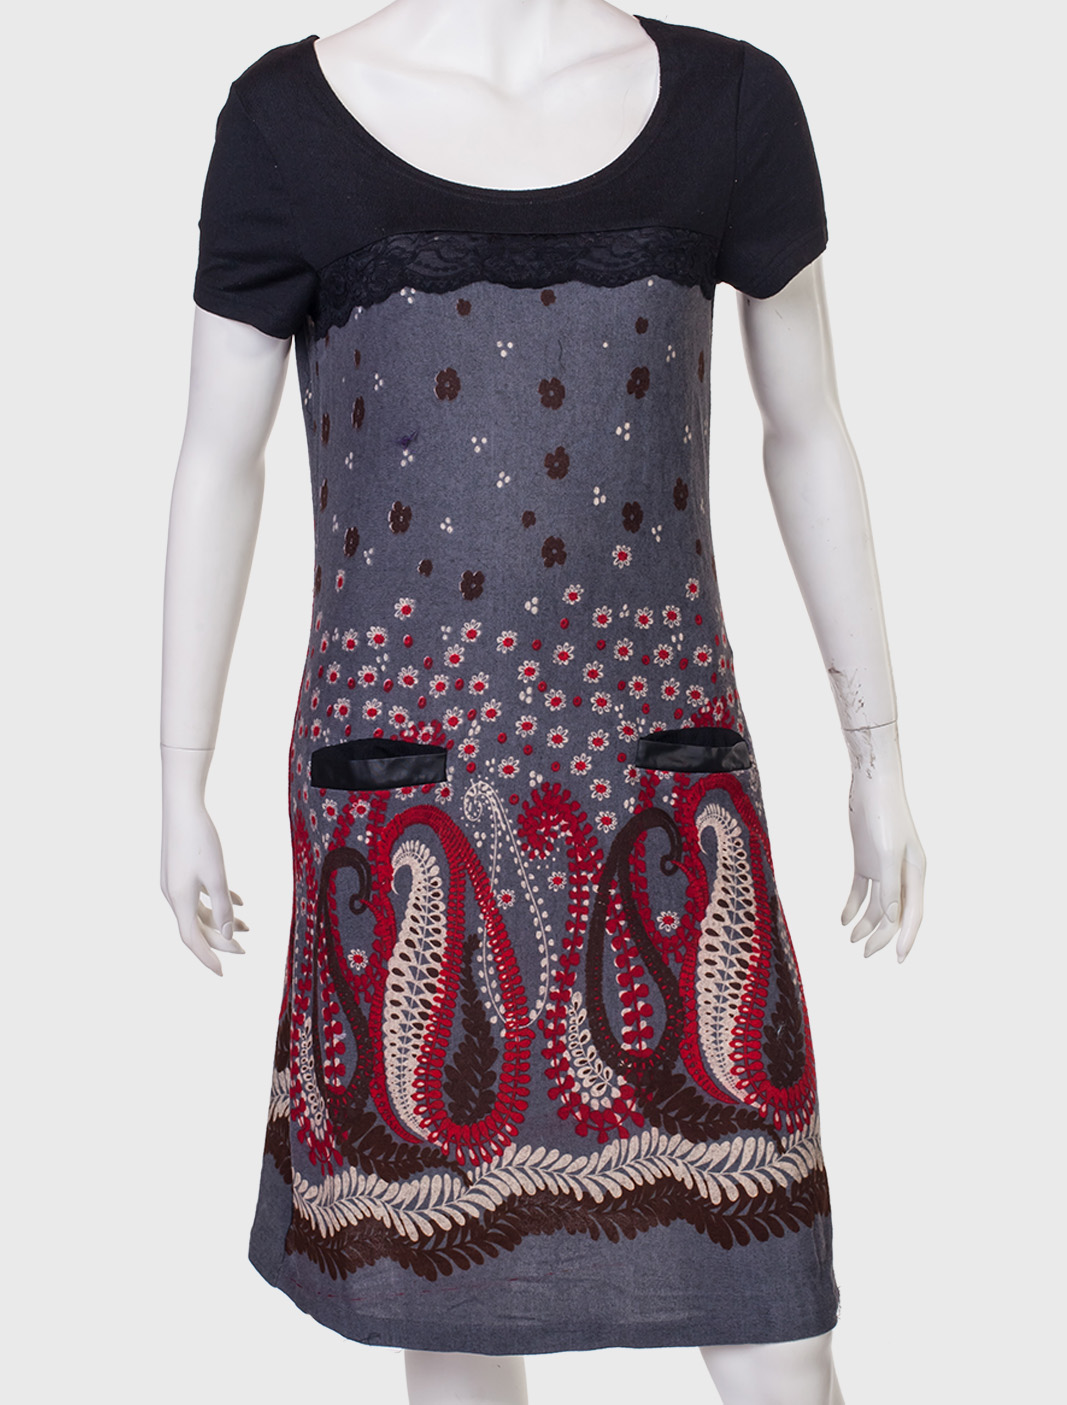 Стильное платье с кармашками от San Francisco - купить в подарок